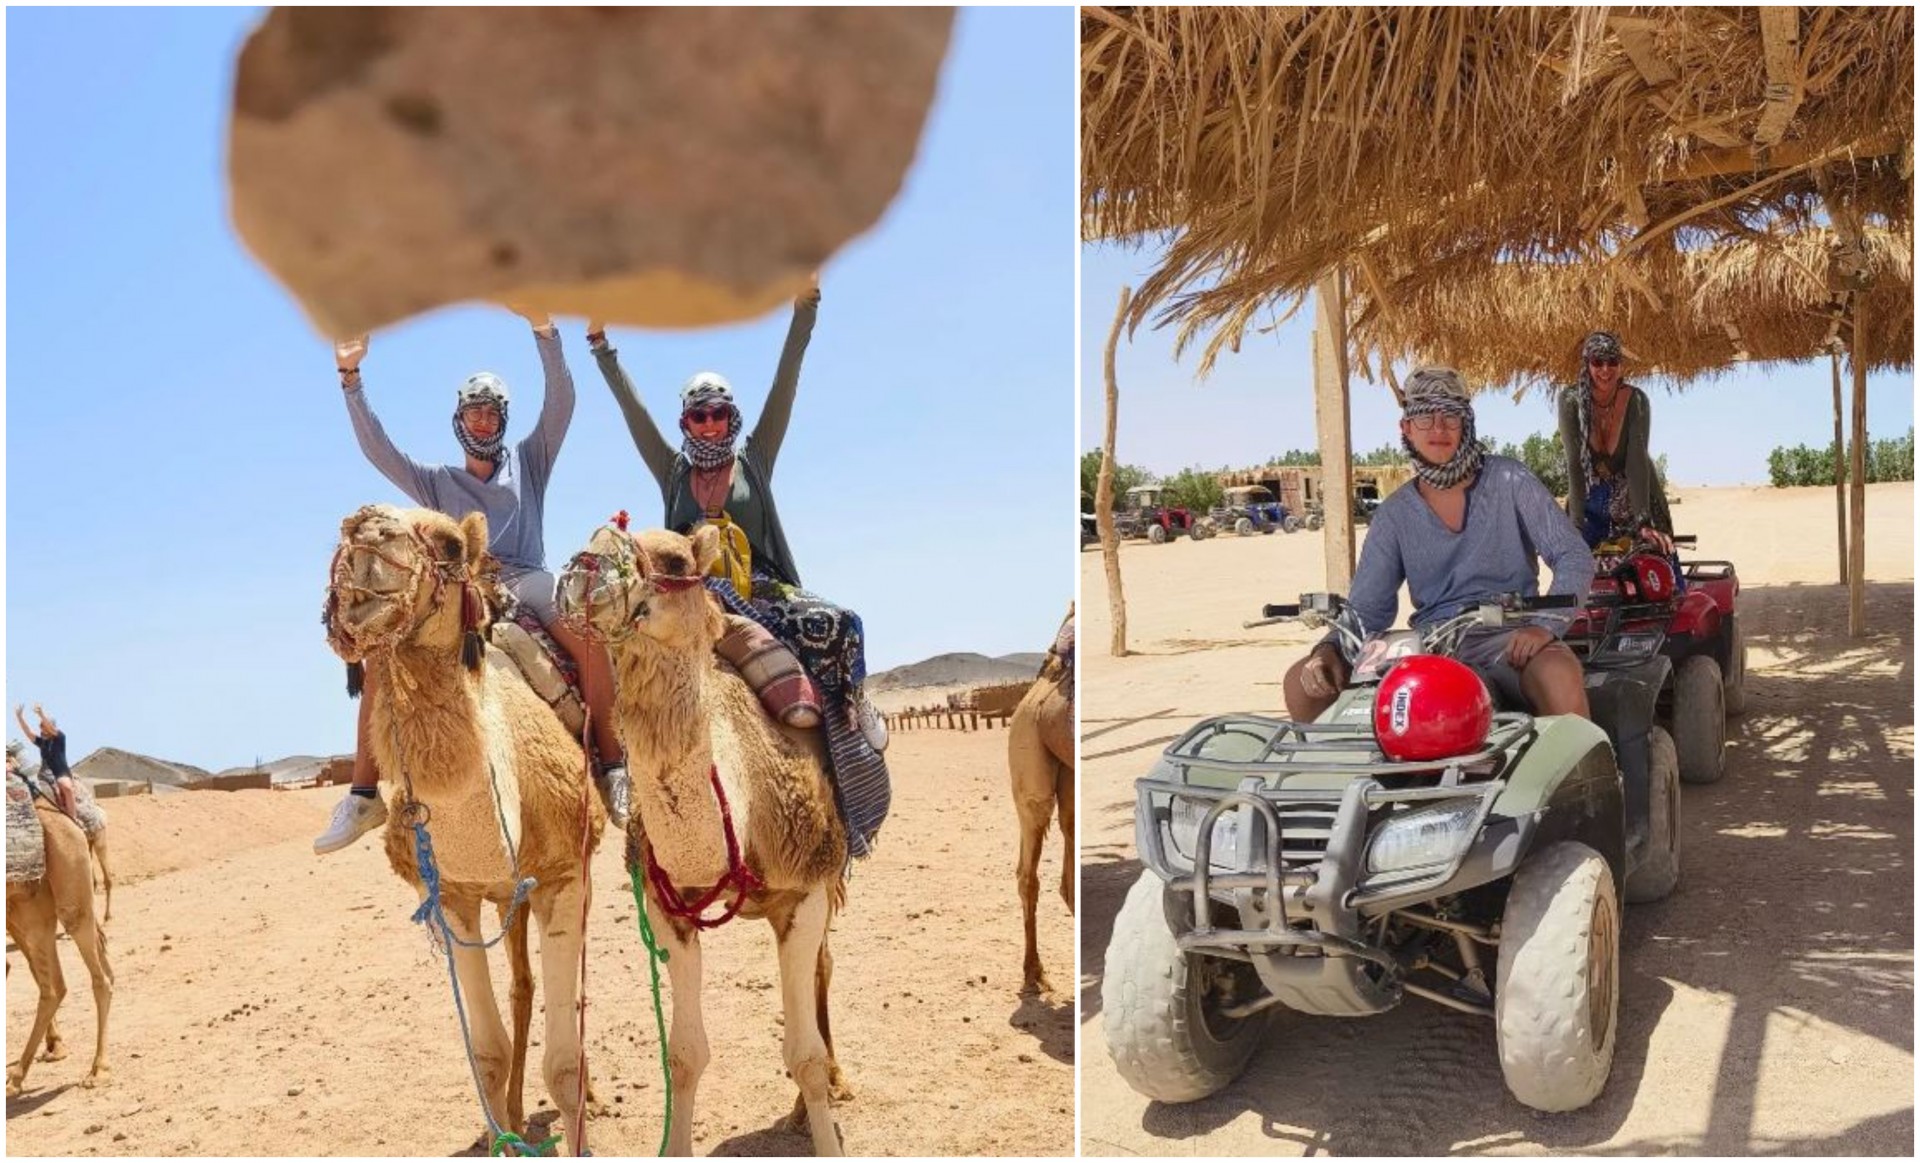 Јаваа камила и возеа четирицикли во пустина: Тијана Дапчевиќ со синот Вук во адреналинска авантура (ФОТО)